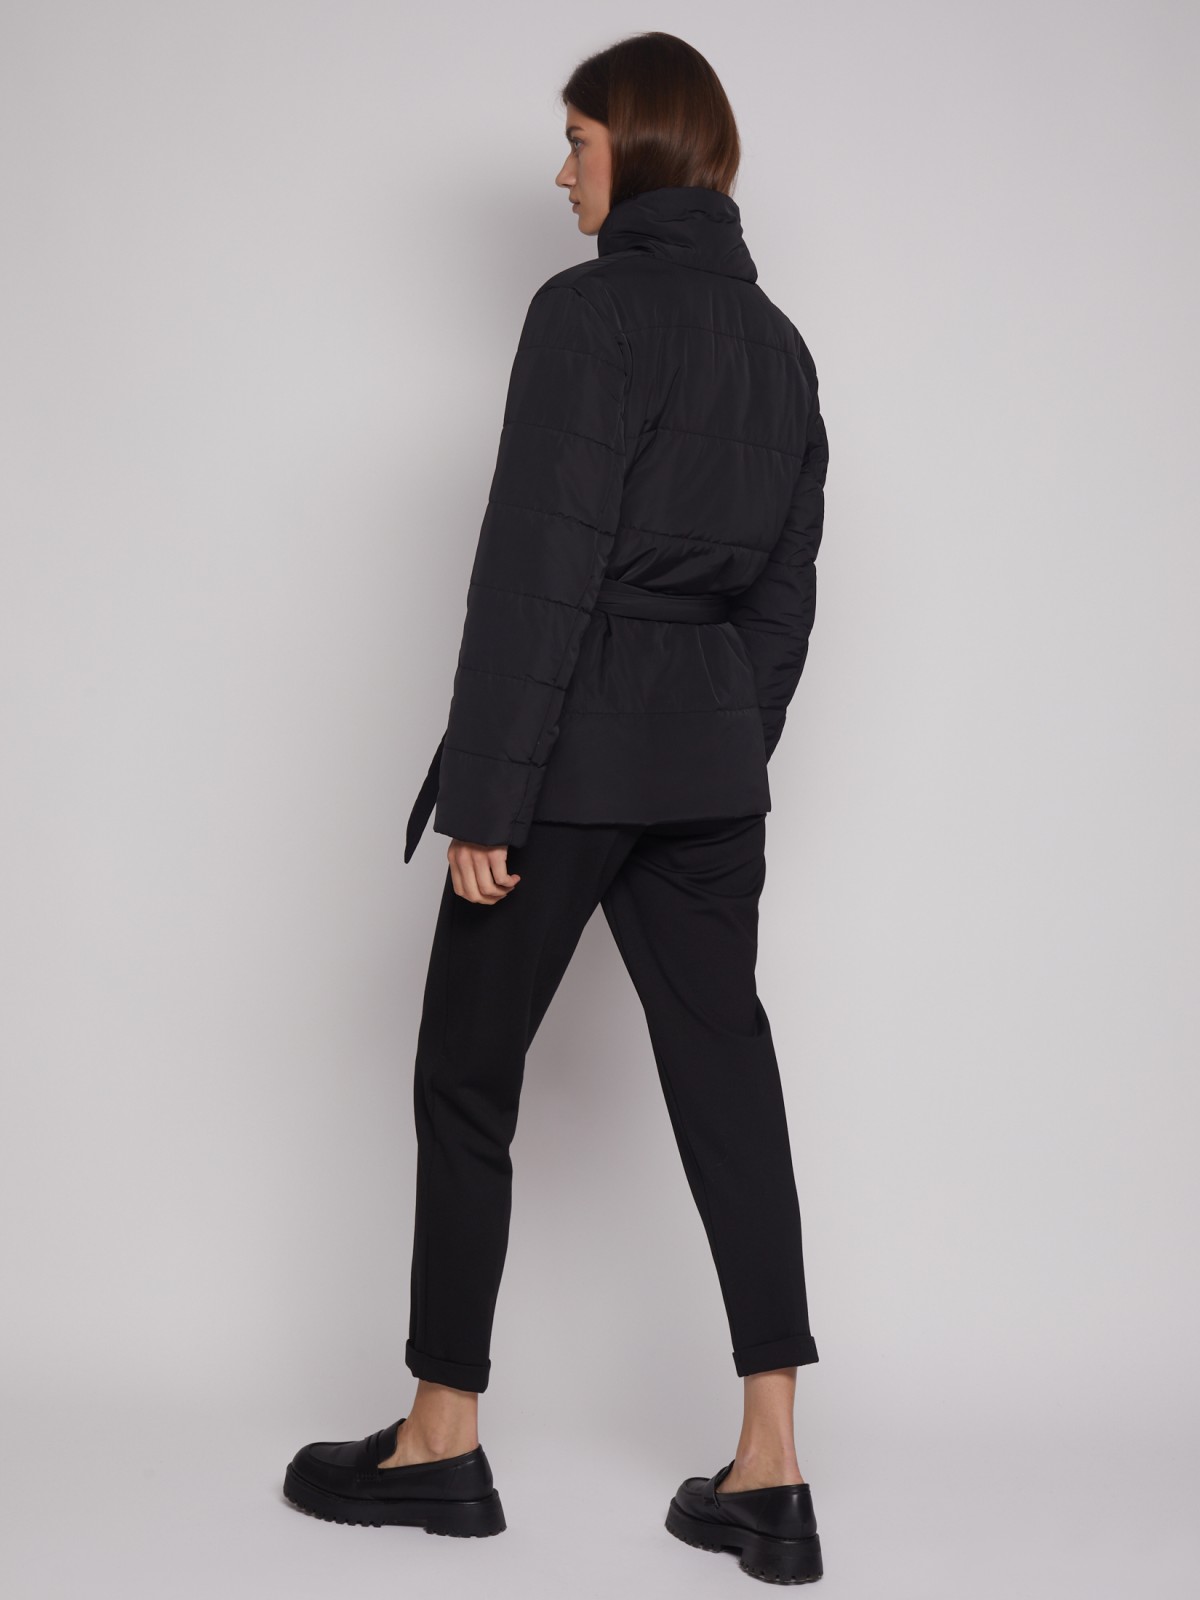 Тёплая куртка с поясом zolla 022335124334, цвет черный, размер XS - фото 6